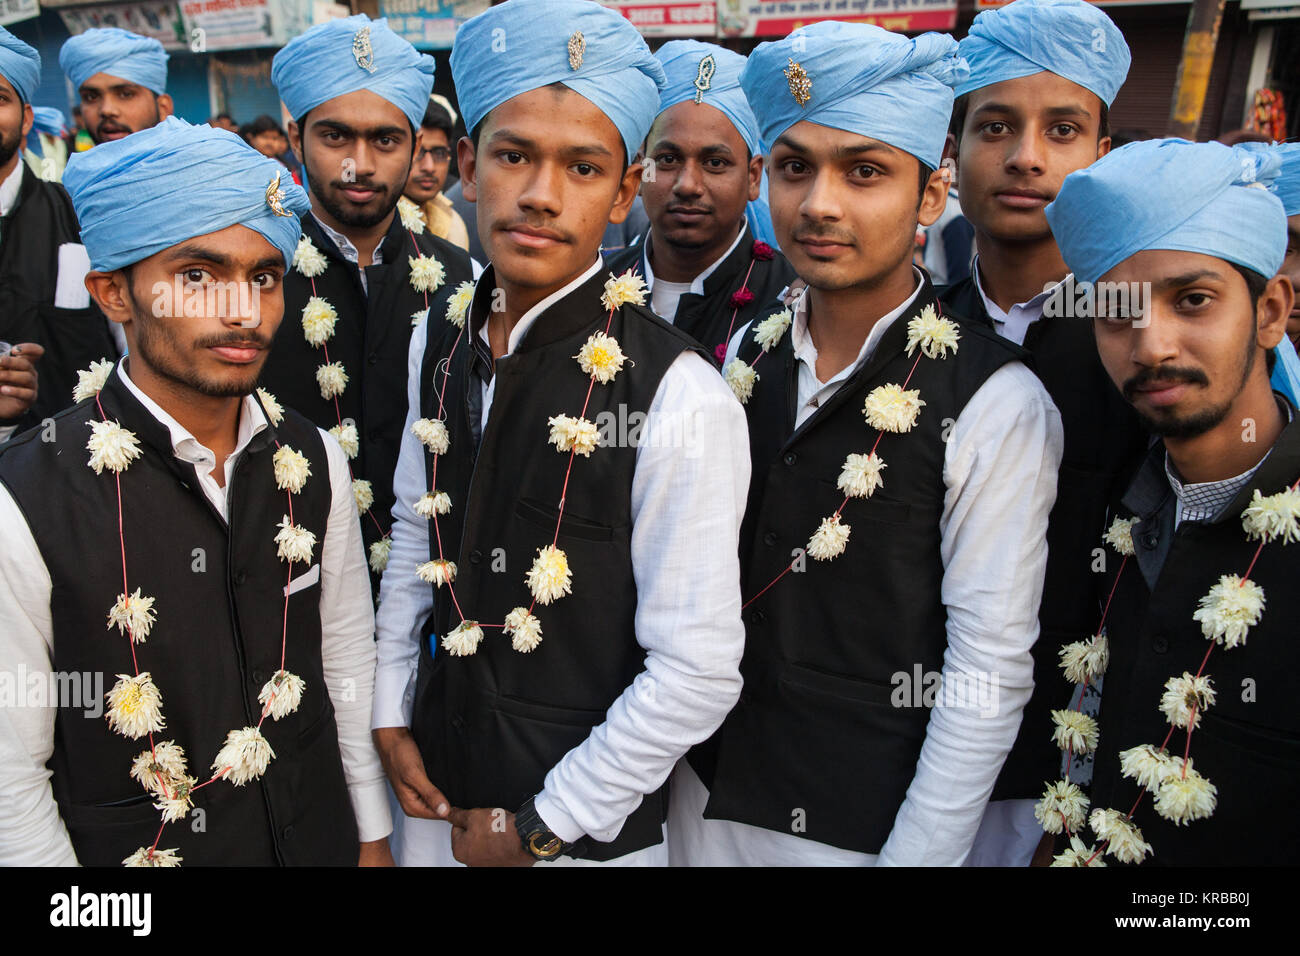 Un groupe d'hommes musulmans portent le costume traditionnel pour célébrer la fête de Eid Milad à Faizabad, Inde Banque D'Images